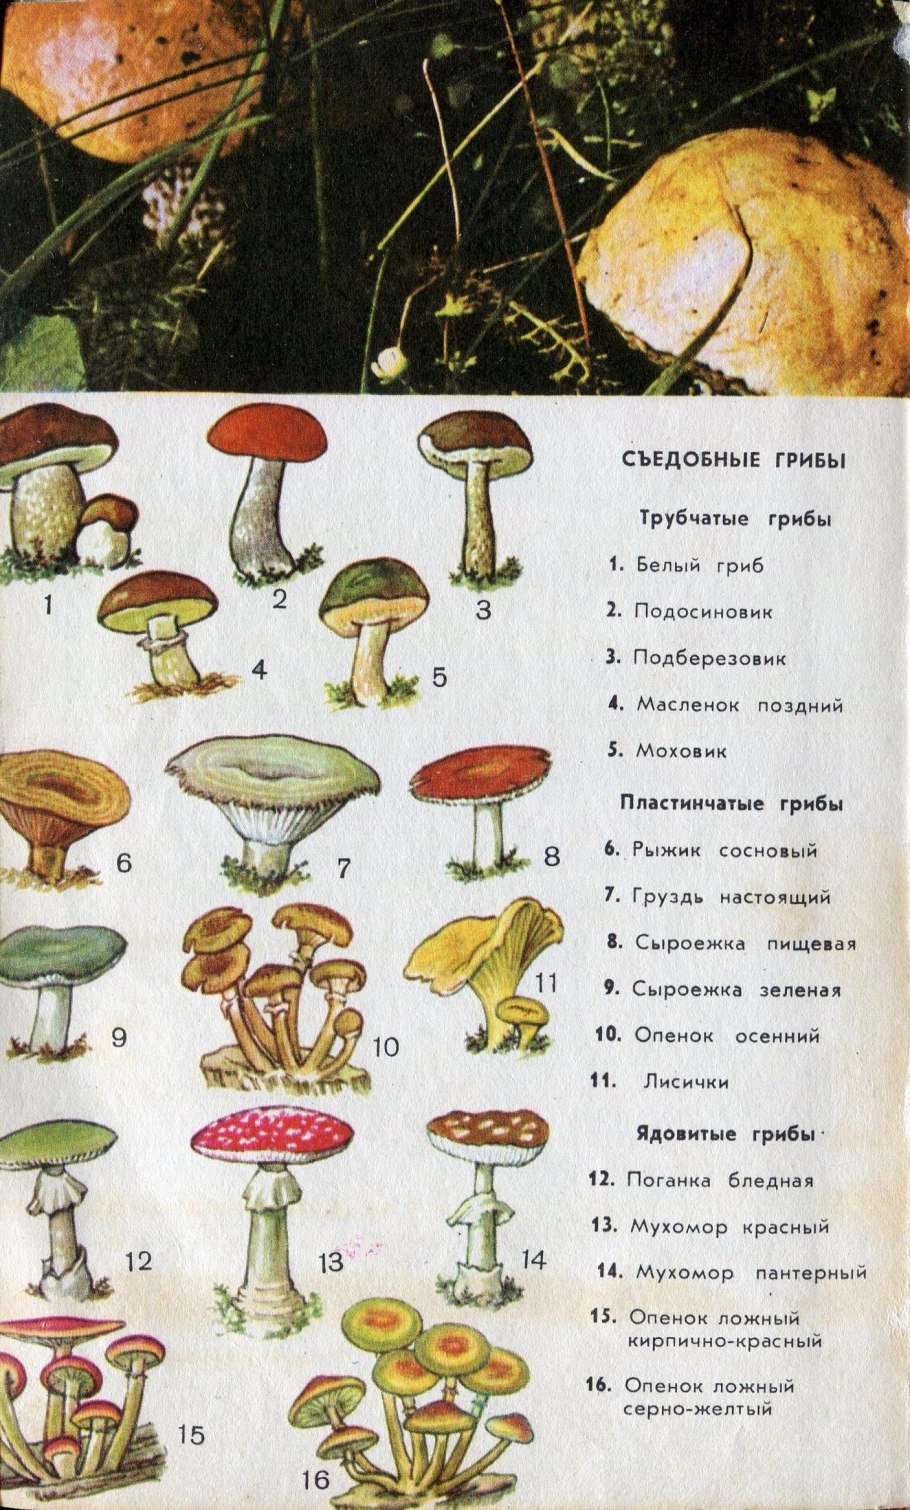 Какие съедобные грибы относятся к группе пластинчатых. Съедобные и несъедобные грибы пластинчатые и трубчатые. Пластинчатые грибы и трубчатые грибы список названий. Ядовитые грибы названия 5 класс трубчатые. Пластинчатые грибы ядовитые несъедобные.